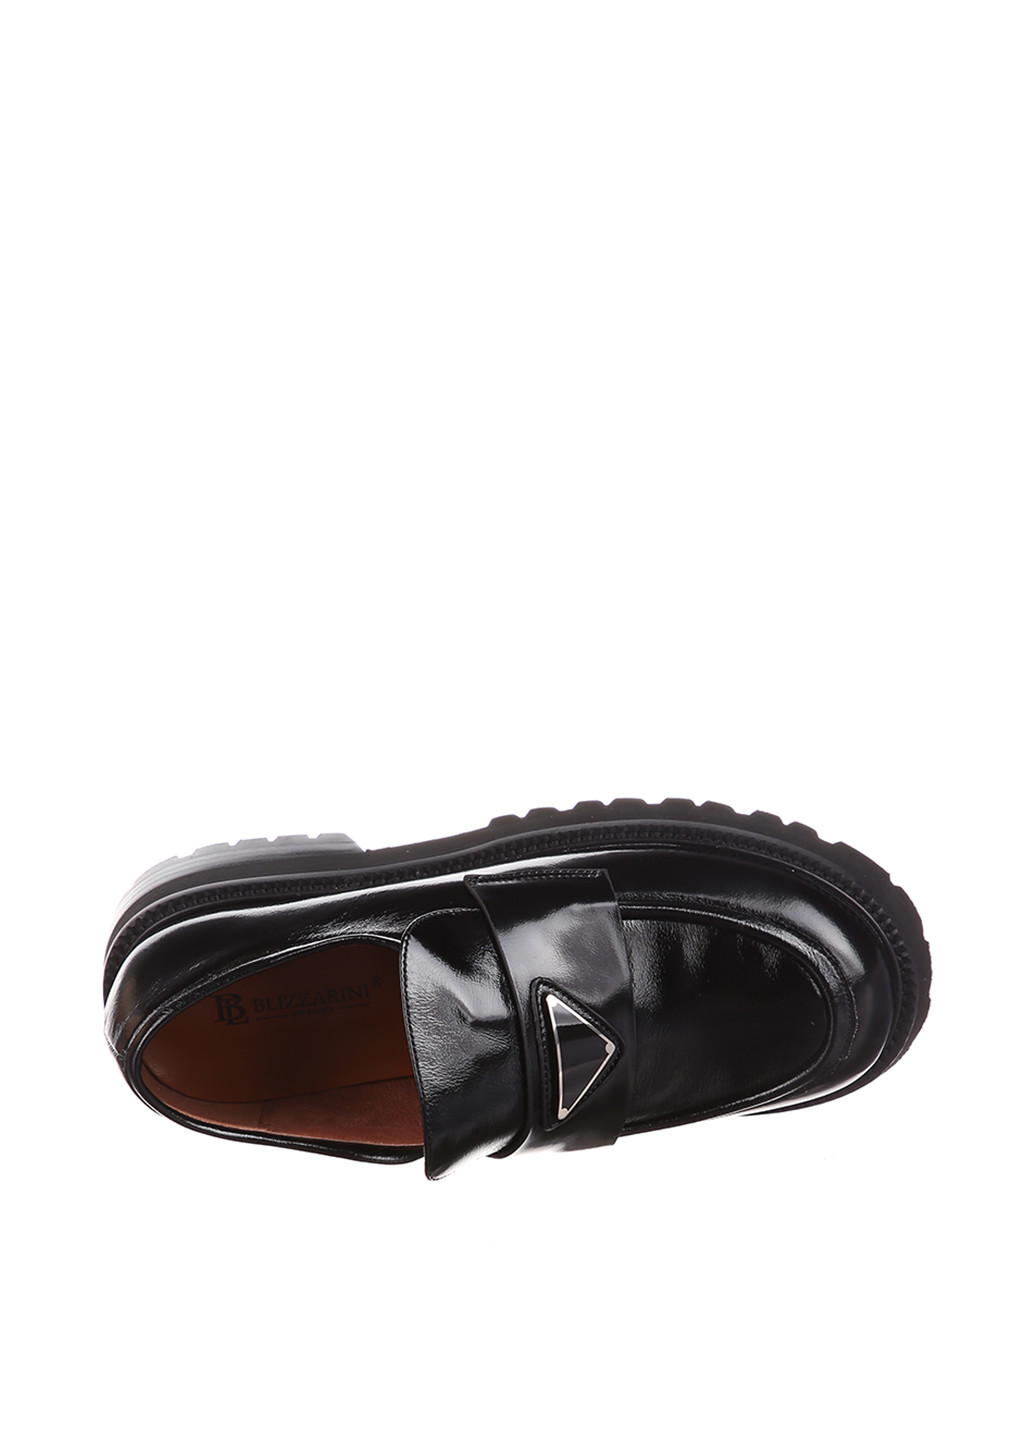 Туфли Blizzarini на высоком каблуке лаковые, с аппликацией